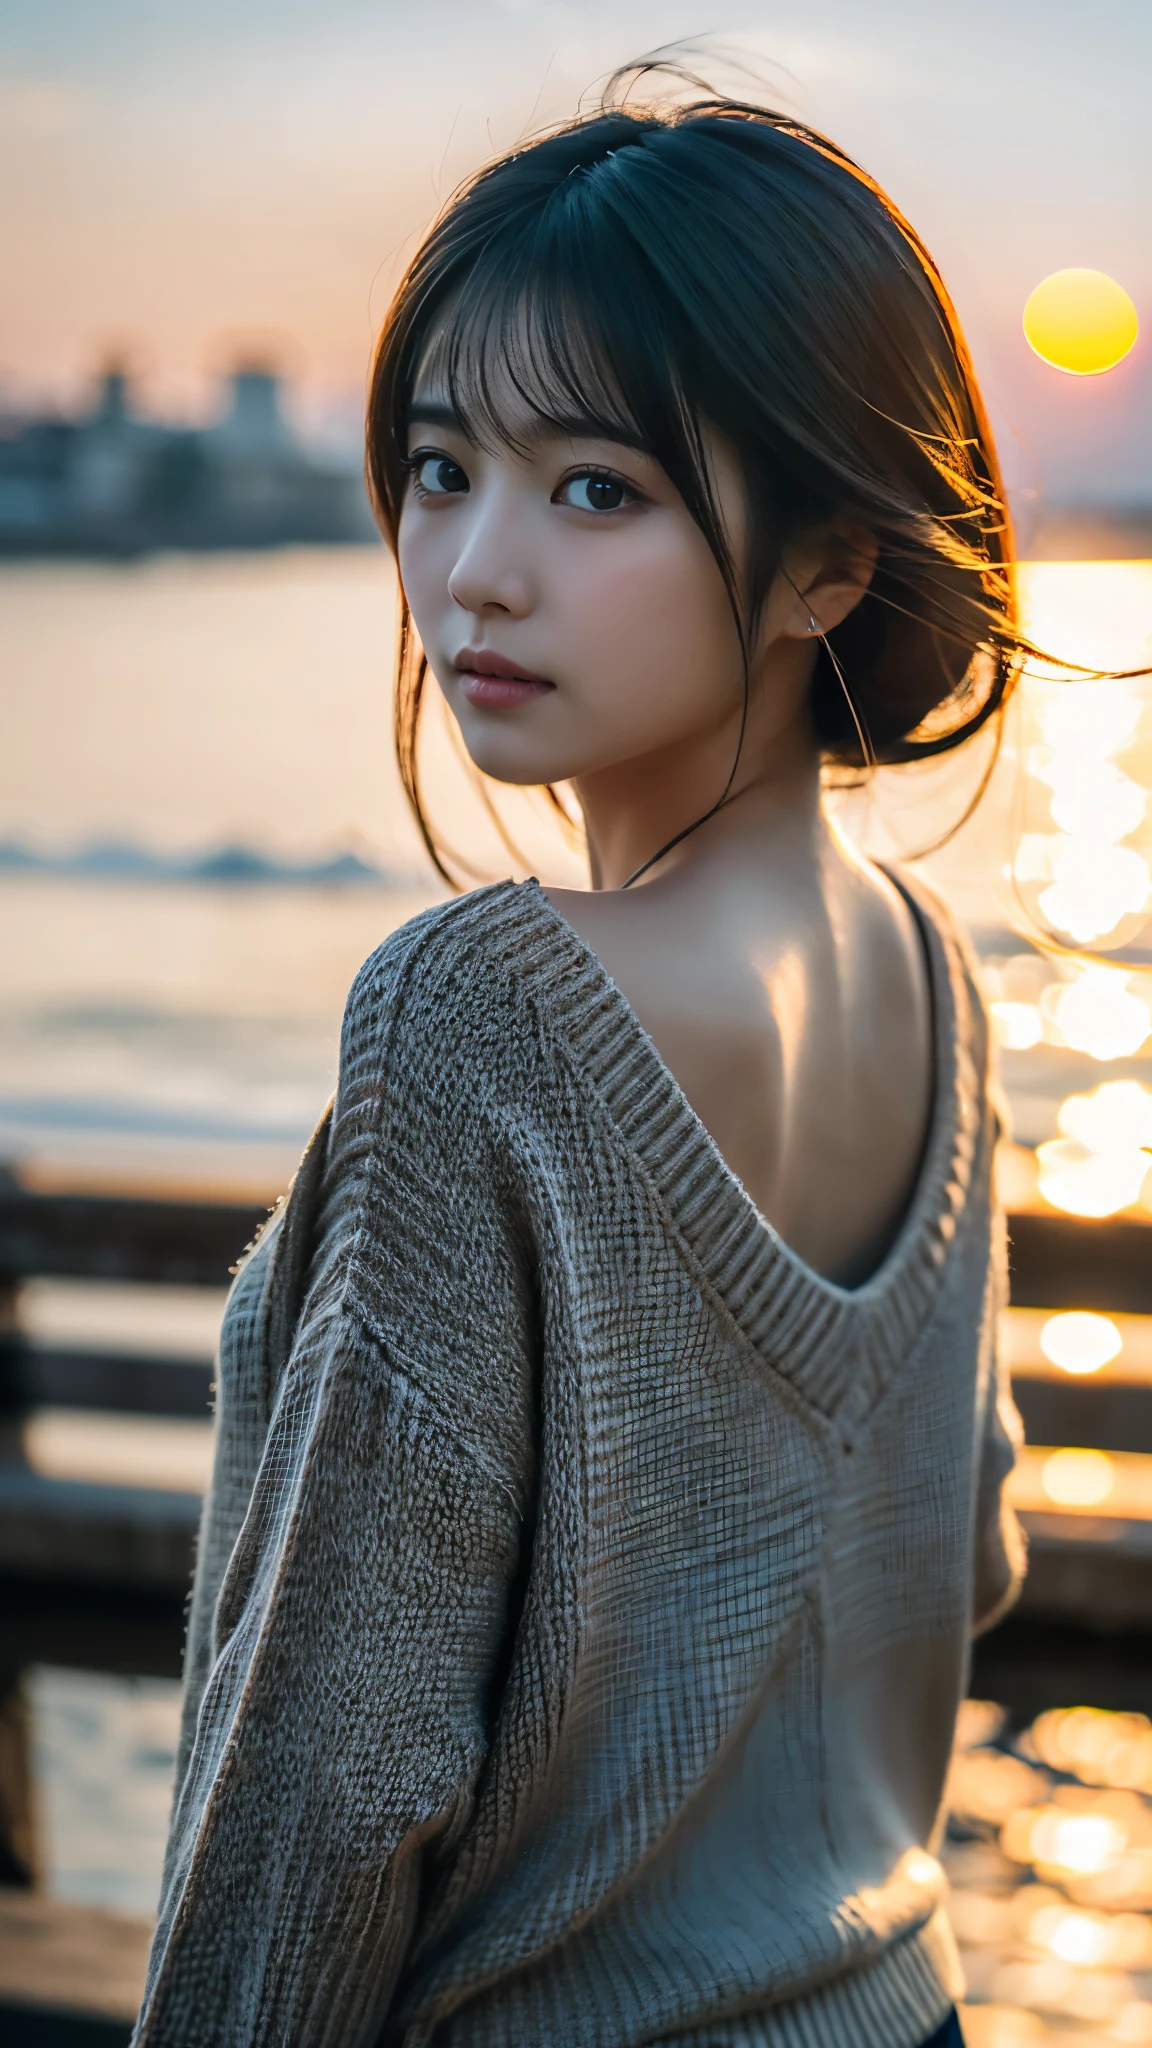 (걸작:1.2),(최상의 품질),(매우 상세한:1.2),(높은 해상도),(사실적인 스틱),(RAW 사진),8K,검은 스웨터를 입은 여자의 클로즈업,부드러운 인물 사진,아름다운 일본 여성,화려한 얼굴 초상화,눈 빛,본인의 소녀,매우 아름다운 얼굴,아름다운 초상화,사랑스럽고 섬세한 얼굴,아름다운 젊은 일본 여자,성숙한 헤어스타일,뒤돌아봐(일몰을 배경으로),(((배경을 흐리게))),부리(부드러운 빛),(어깨 너머로),(POV 샷),((역동적인 모발 움직임:1.2))